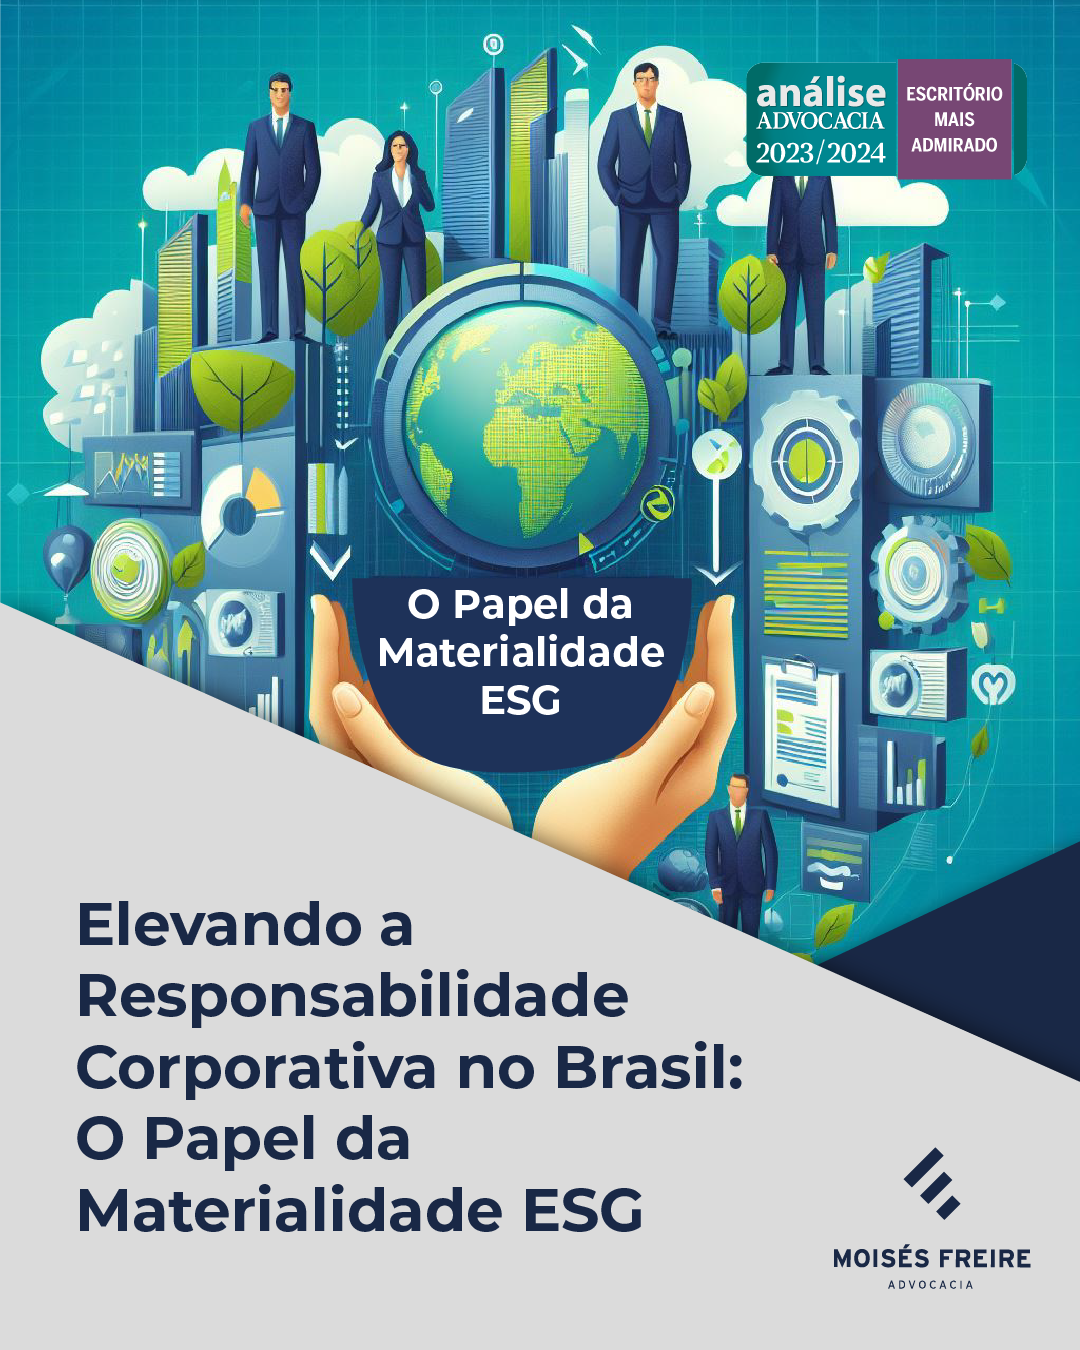 Elevando a Responsabilidade Corporativa no Brasil: O Papel da Materialidade ESG